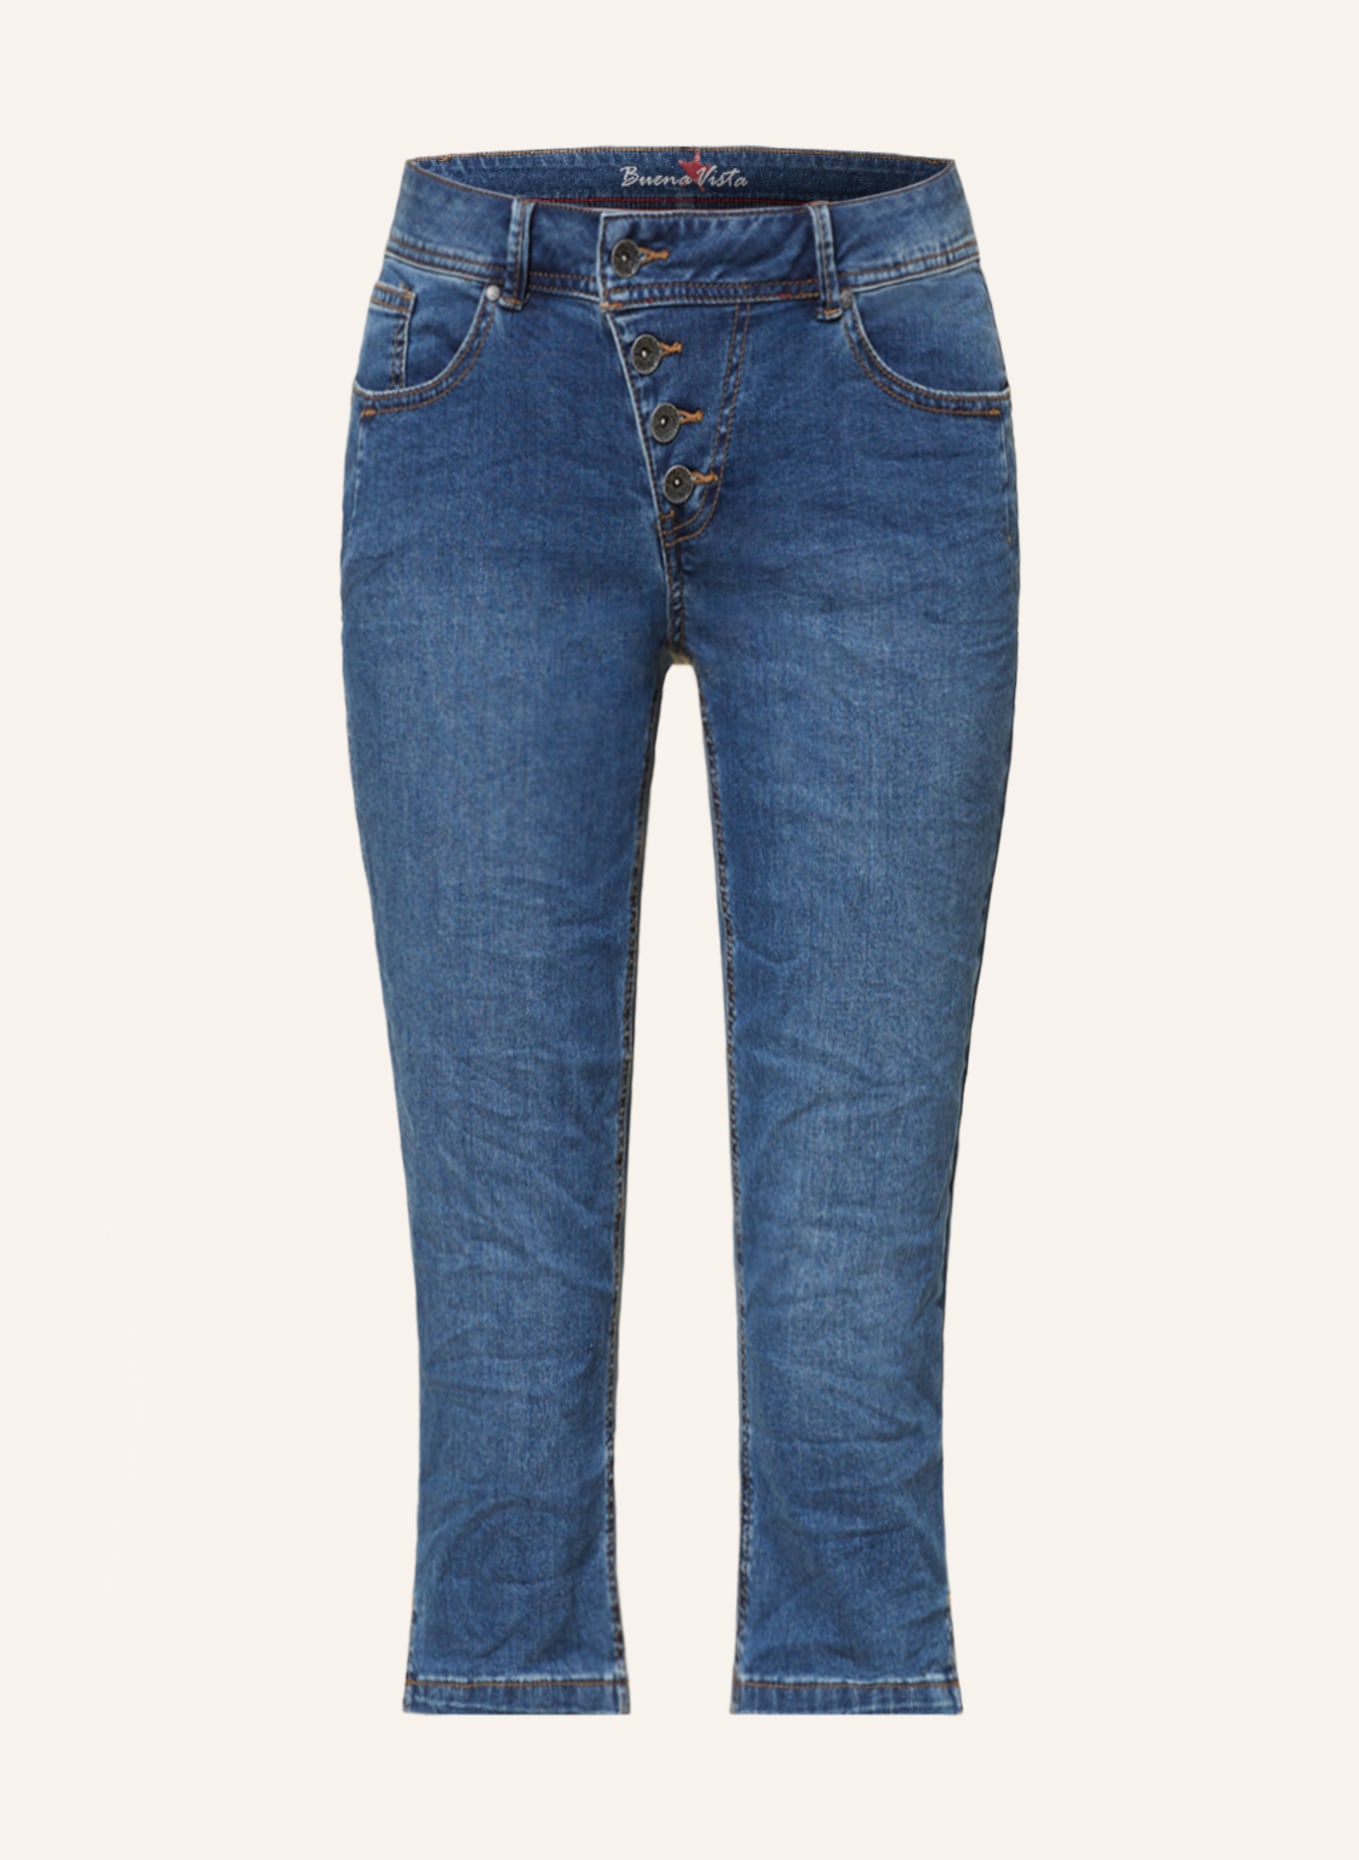 Buena Vista 3/4-Jeans MALIBU, Farbe: 8077 midstone (Bild 1)